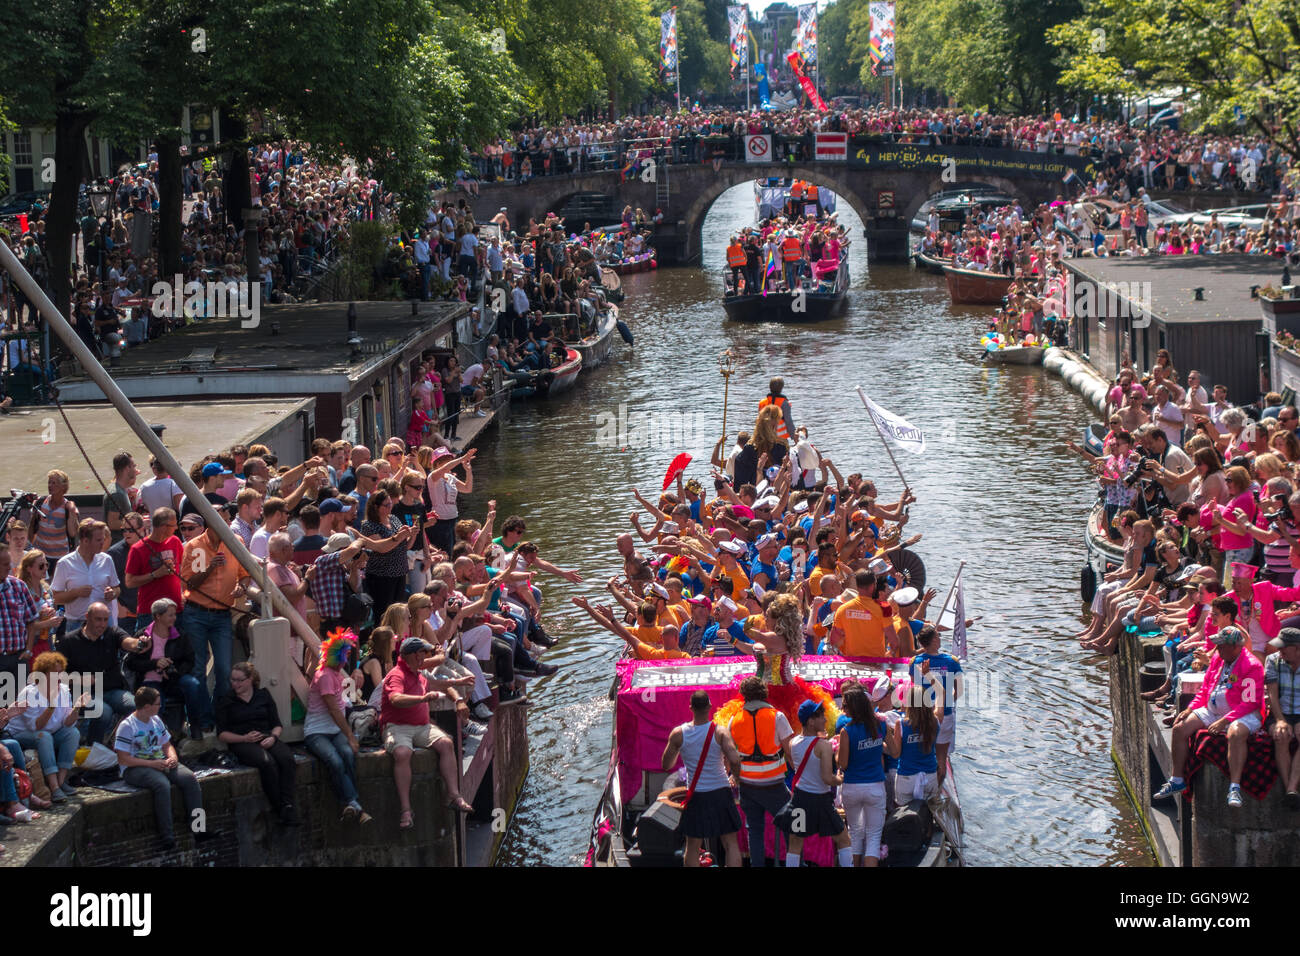 Amsterdam, Niederlande. 6. August 2016. Die jährliche Amsterdam Gay Pride Canal Parade war eine special Edition, weil Amsterdam EuroPride in diesem Jahr gehostet wird. Riesige Menschenmassen jubelten über 80 Boote auf den Prinsengracht Kanal und Fluss Amstel. Bildnachweis: Wiskerke/Alamy Live-Nachrichten Stockfoto